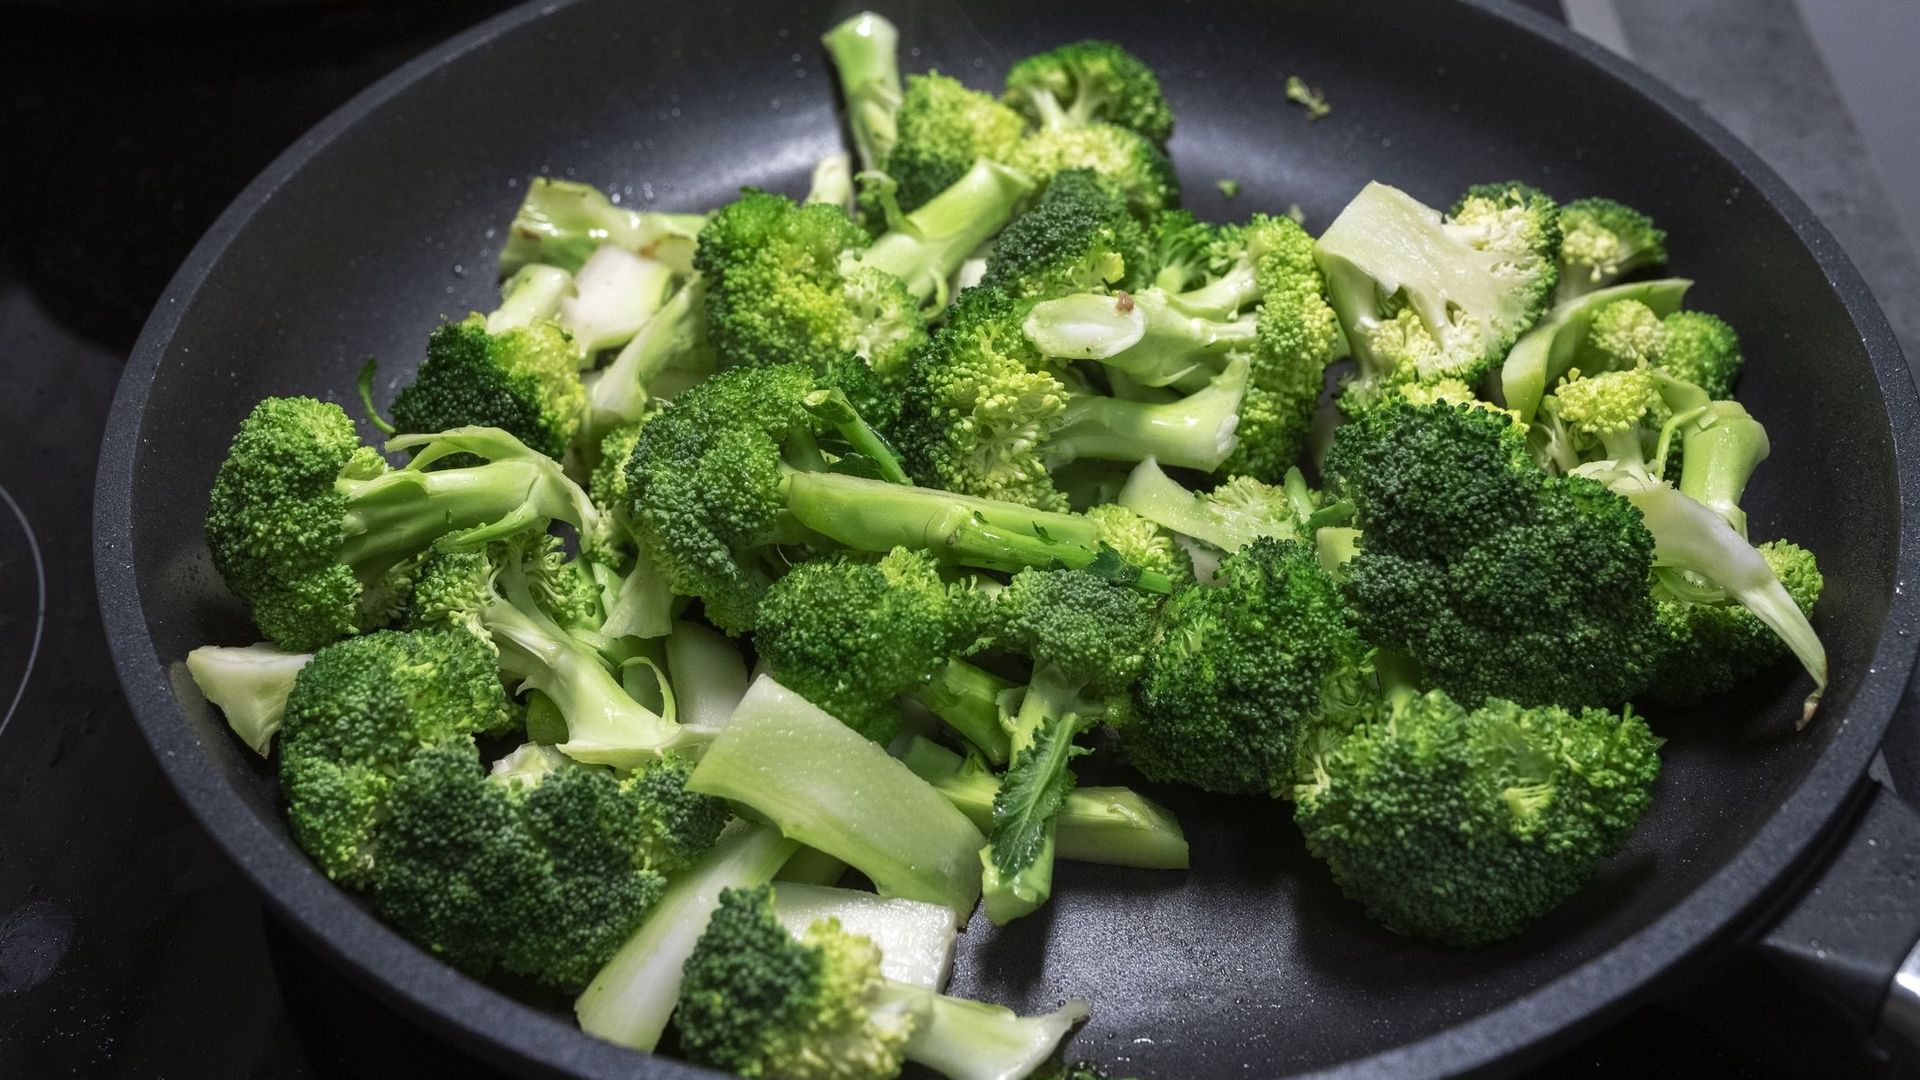 Manger des brocolis peut limiter les allergies cutanées, selon une étude.